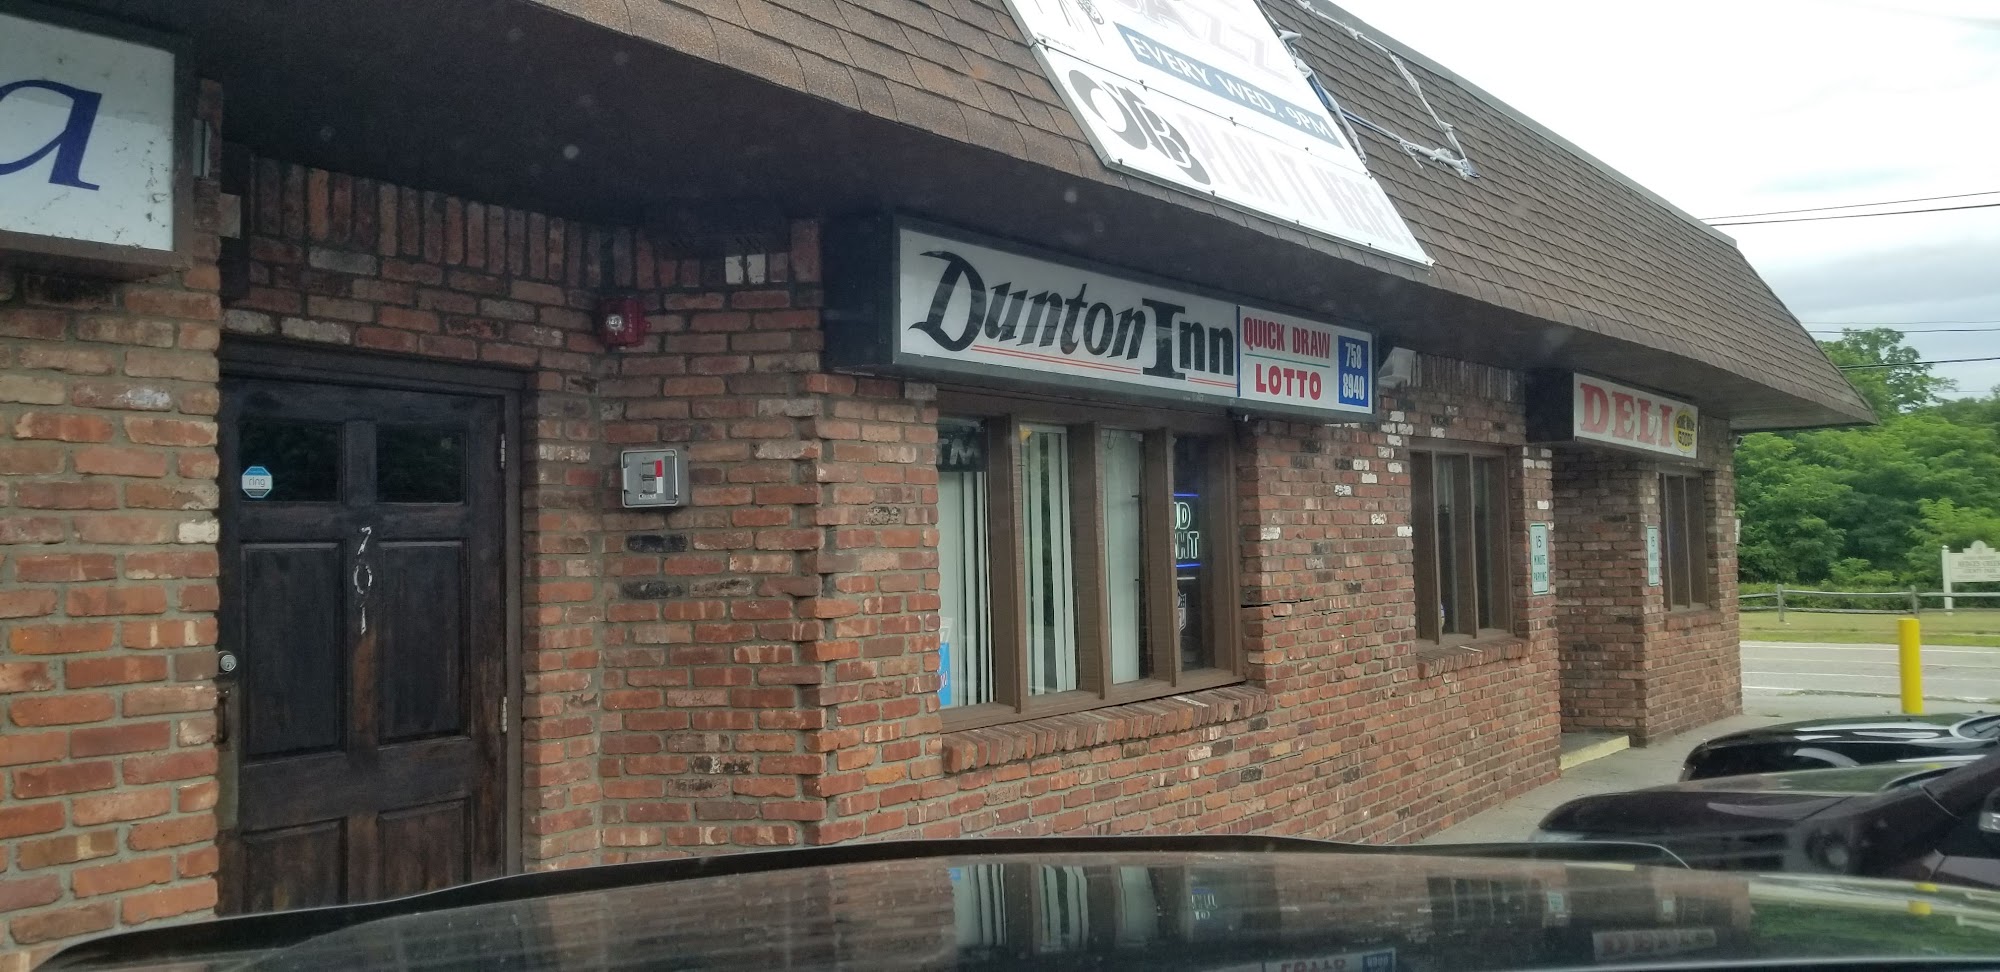 Dunton Inn